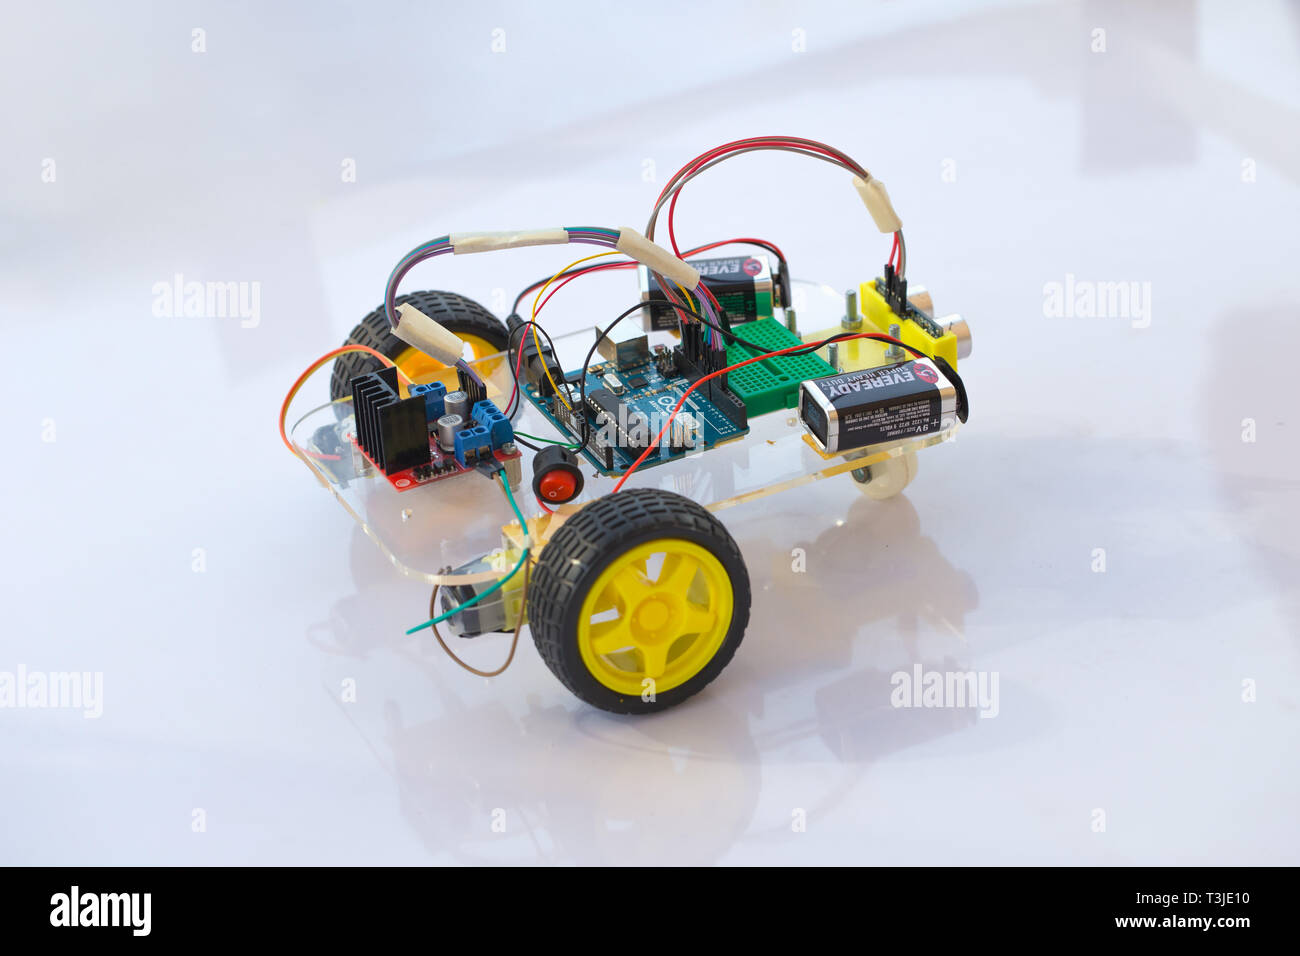 Electornic auto Roboter Bausatz Modul von Micro Controller Open-Source-Hardware für kid Bildung Zukunft. vom 20. Januar 2018, Bangkok, Thailand. Stockfoto